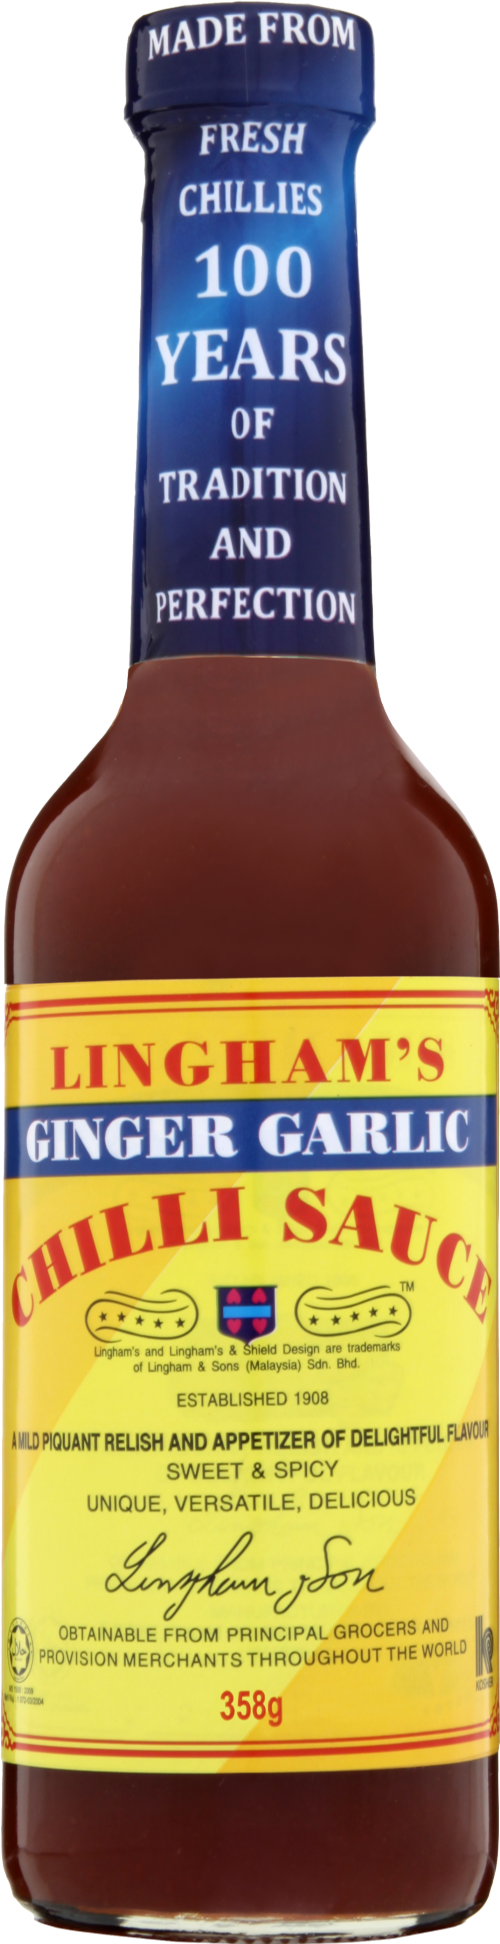 LINGHAM'S Ginger Garlic Chilli Sauce 358g